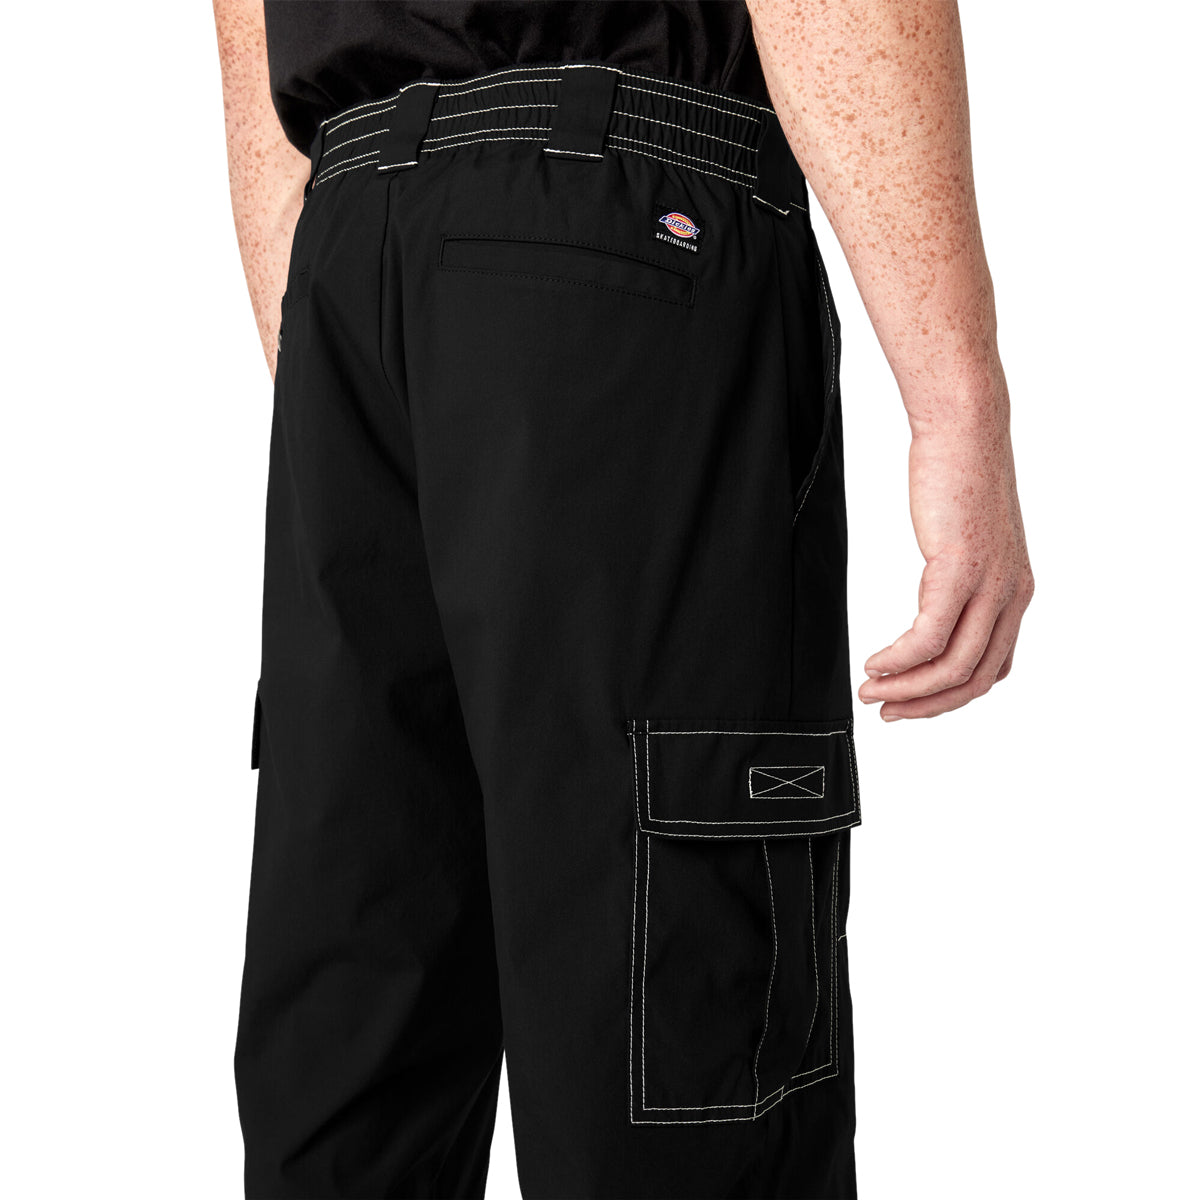 Dickies Loose Fit Cargo Pants - Black image 4